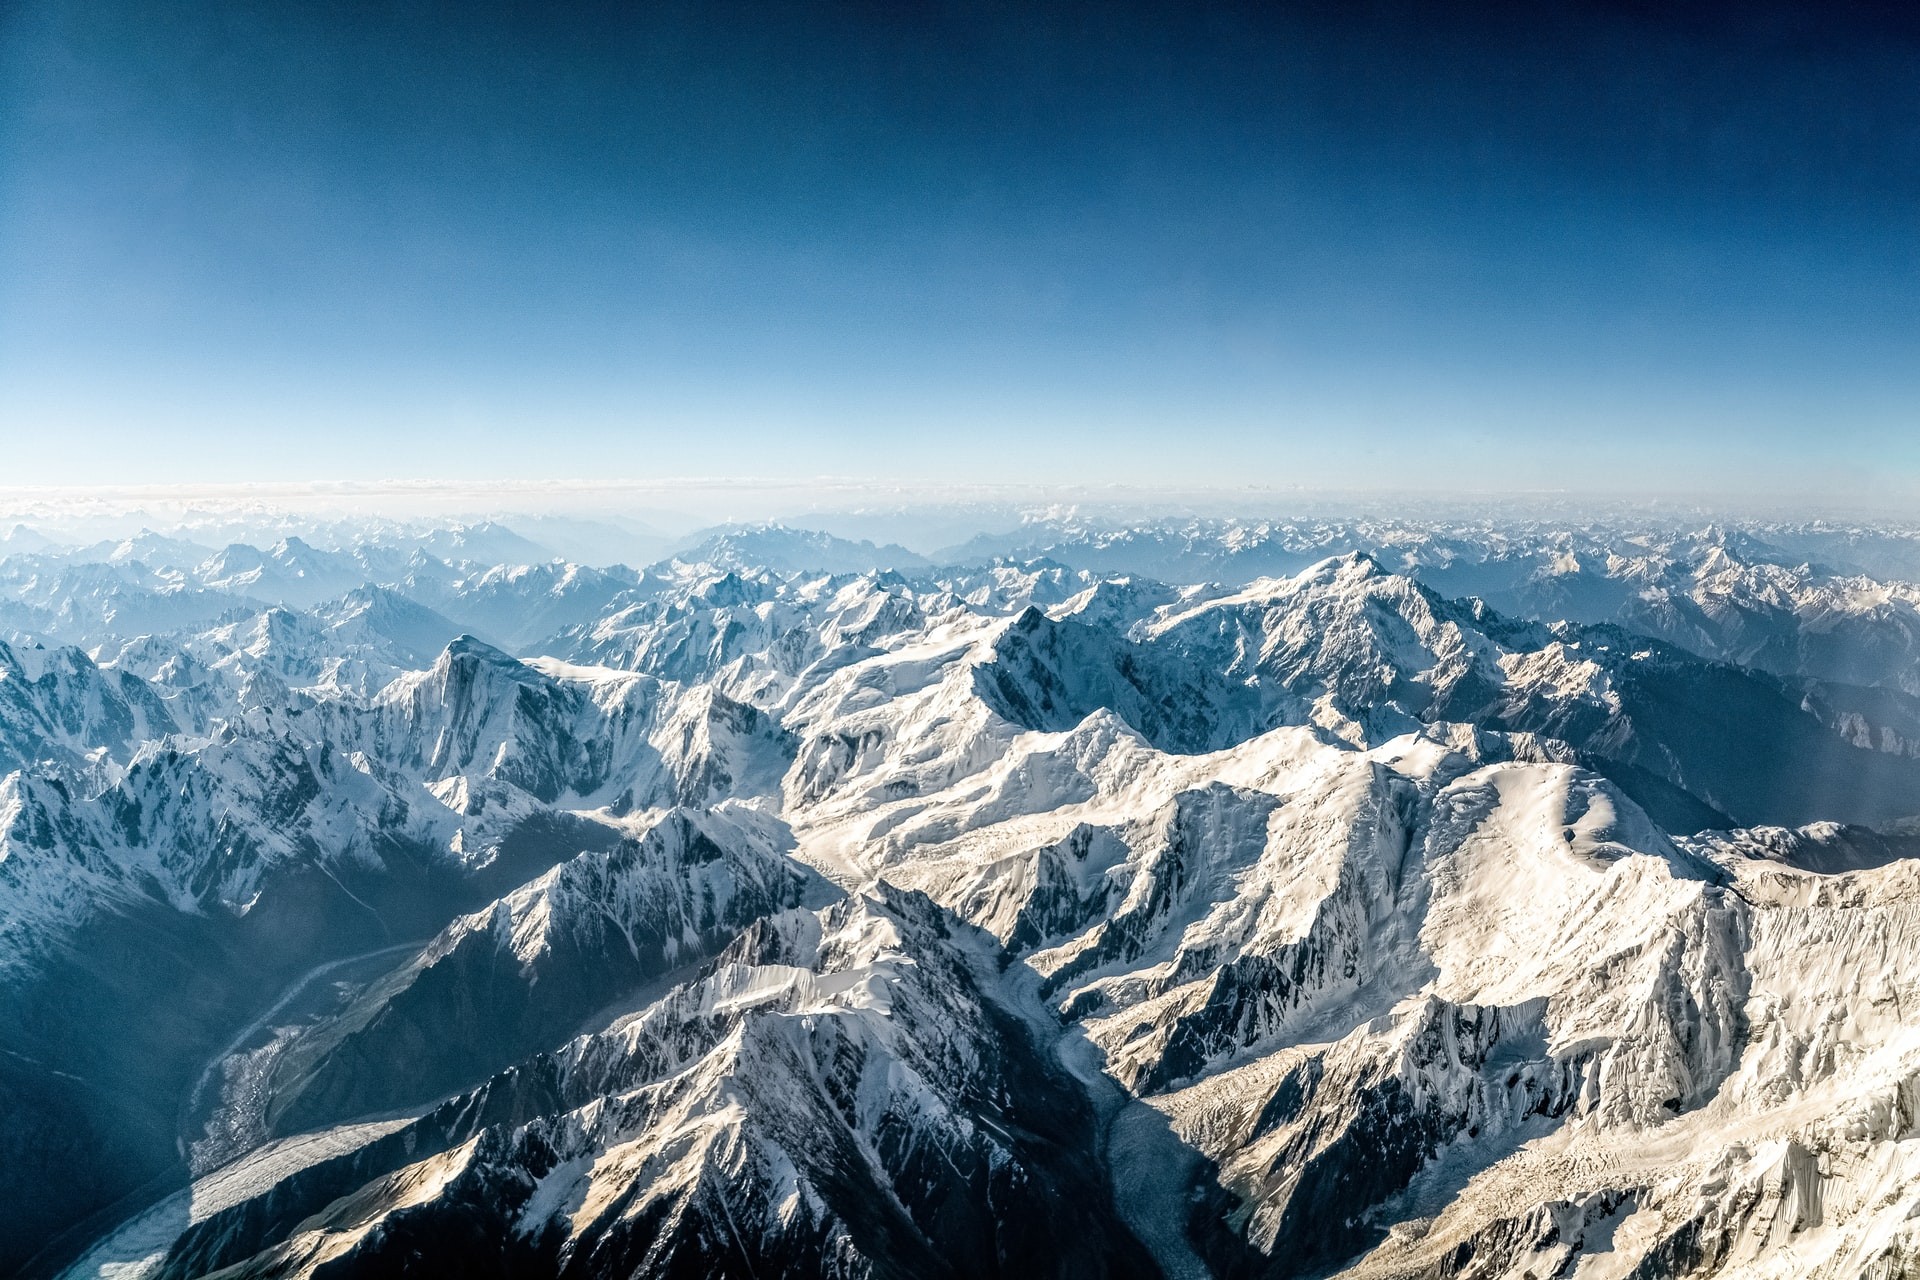 Microplásticos são encontrados também no topo do Monte Everest (Foto: Jeremy Zero / Unsplash)